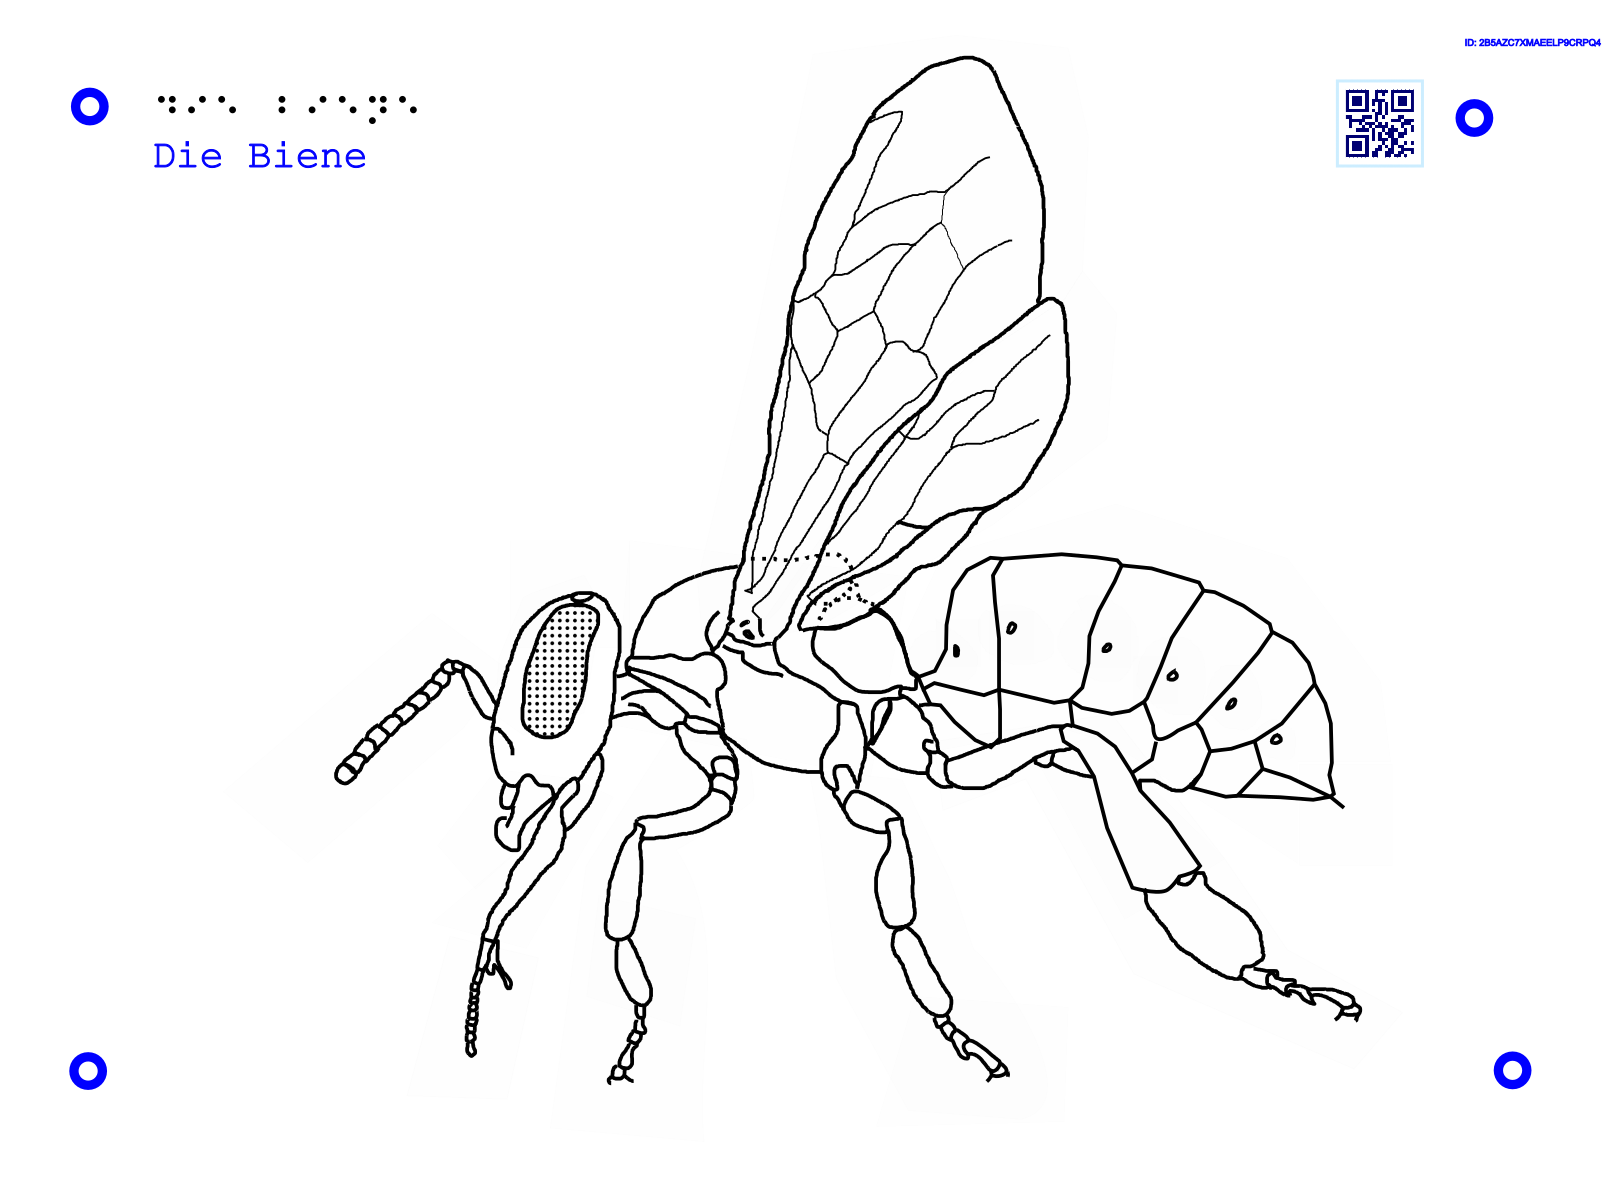 11Taktile Grafik, die den Aufbau einer Biene darstellt.